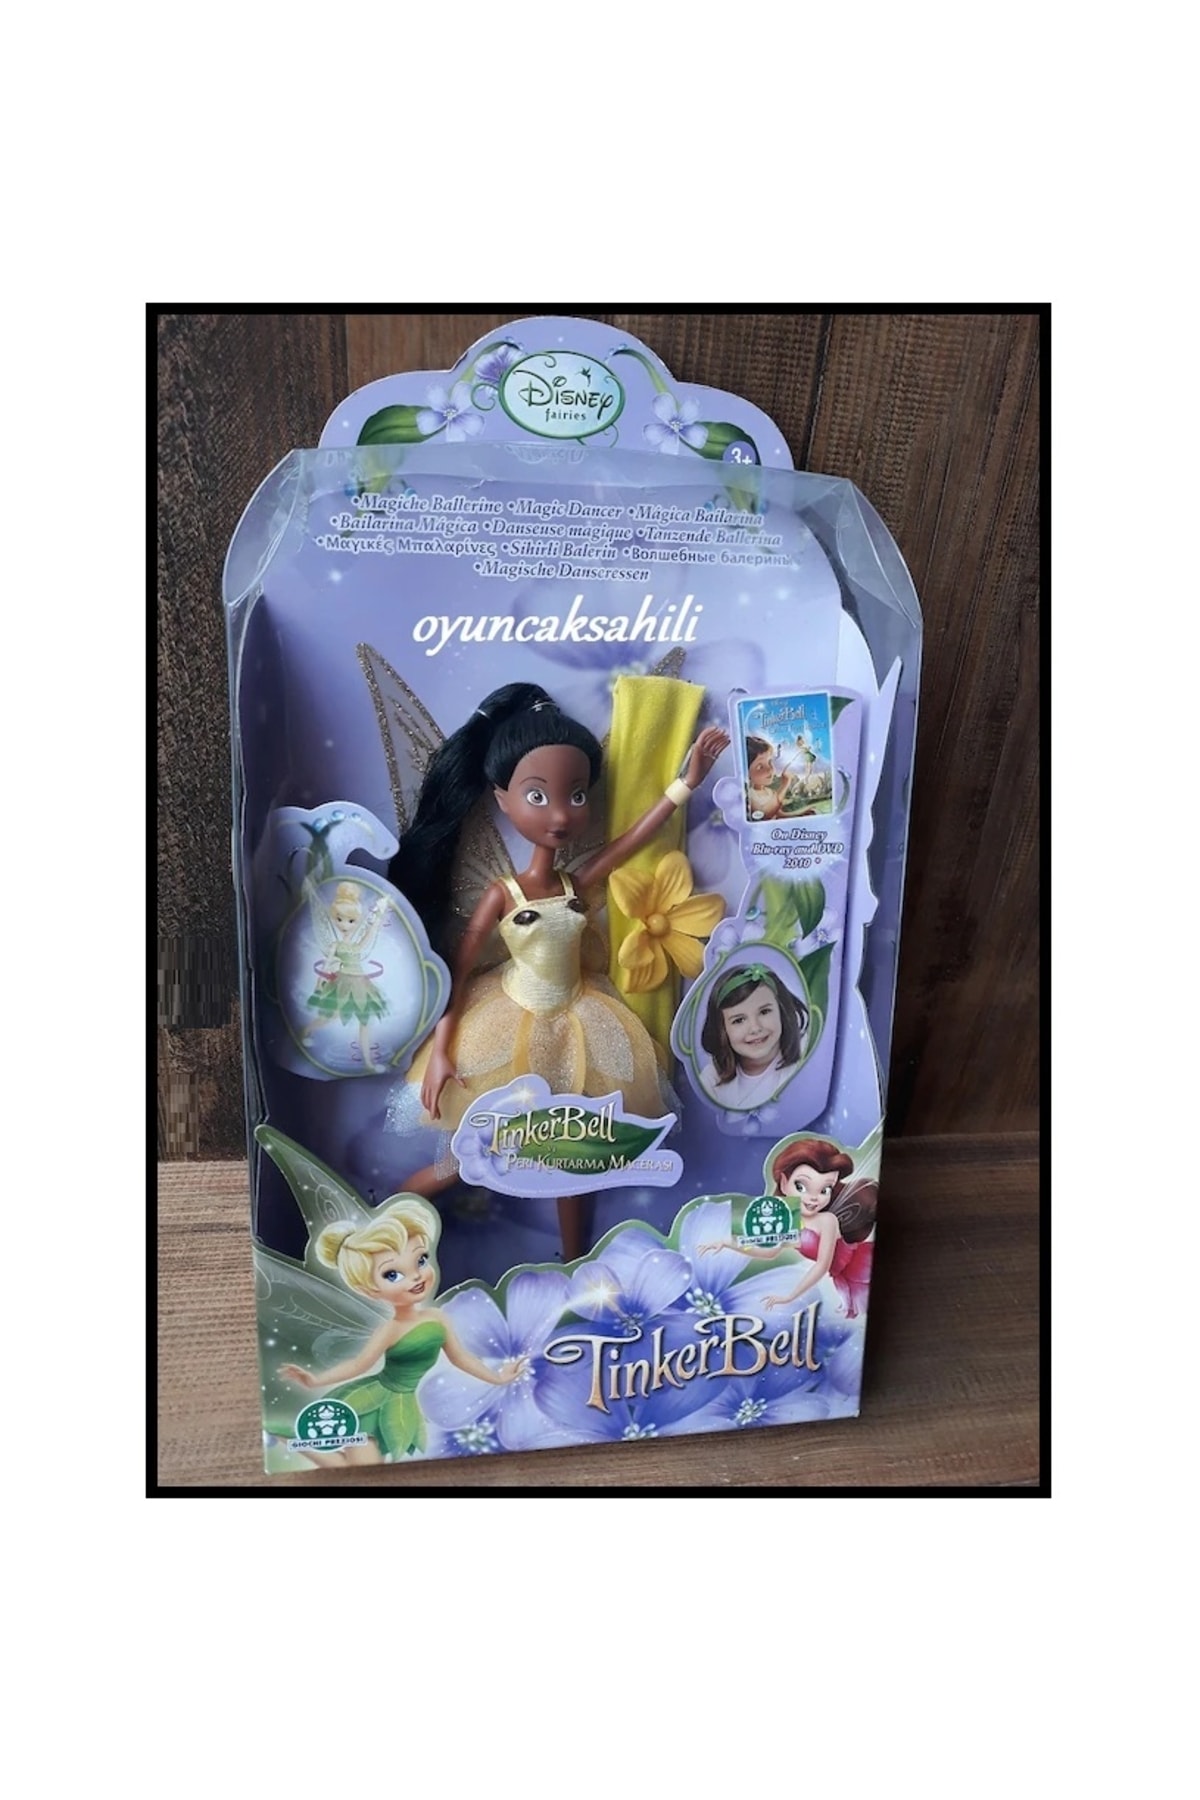 OYUNCAKSAHİLİ Tinkerbell Kanatlı Et Bebek Disney Sihirli Balerin Belden Döner Orjinal Ürün